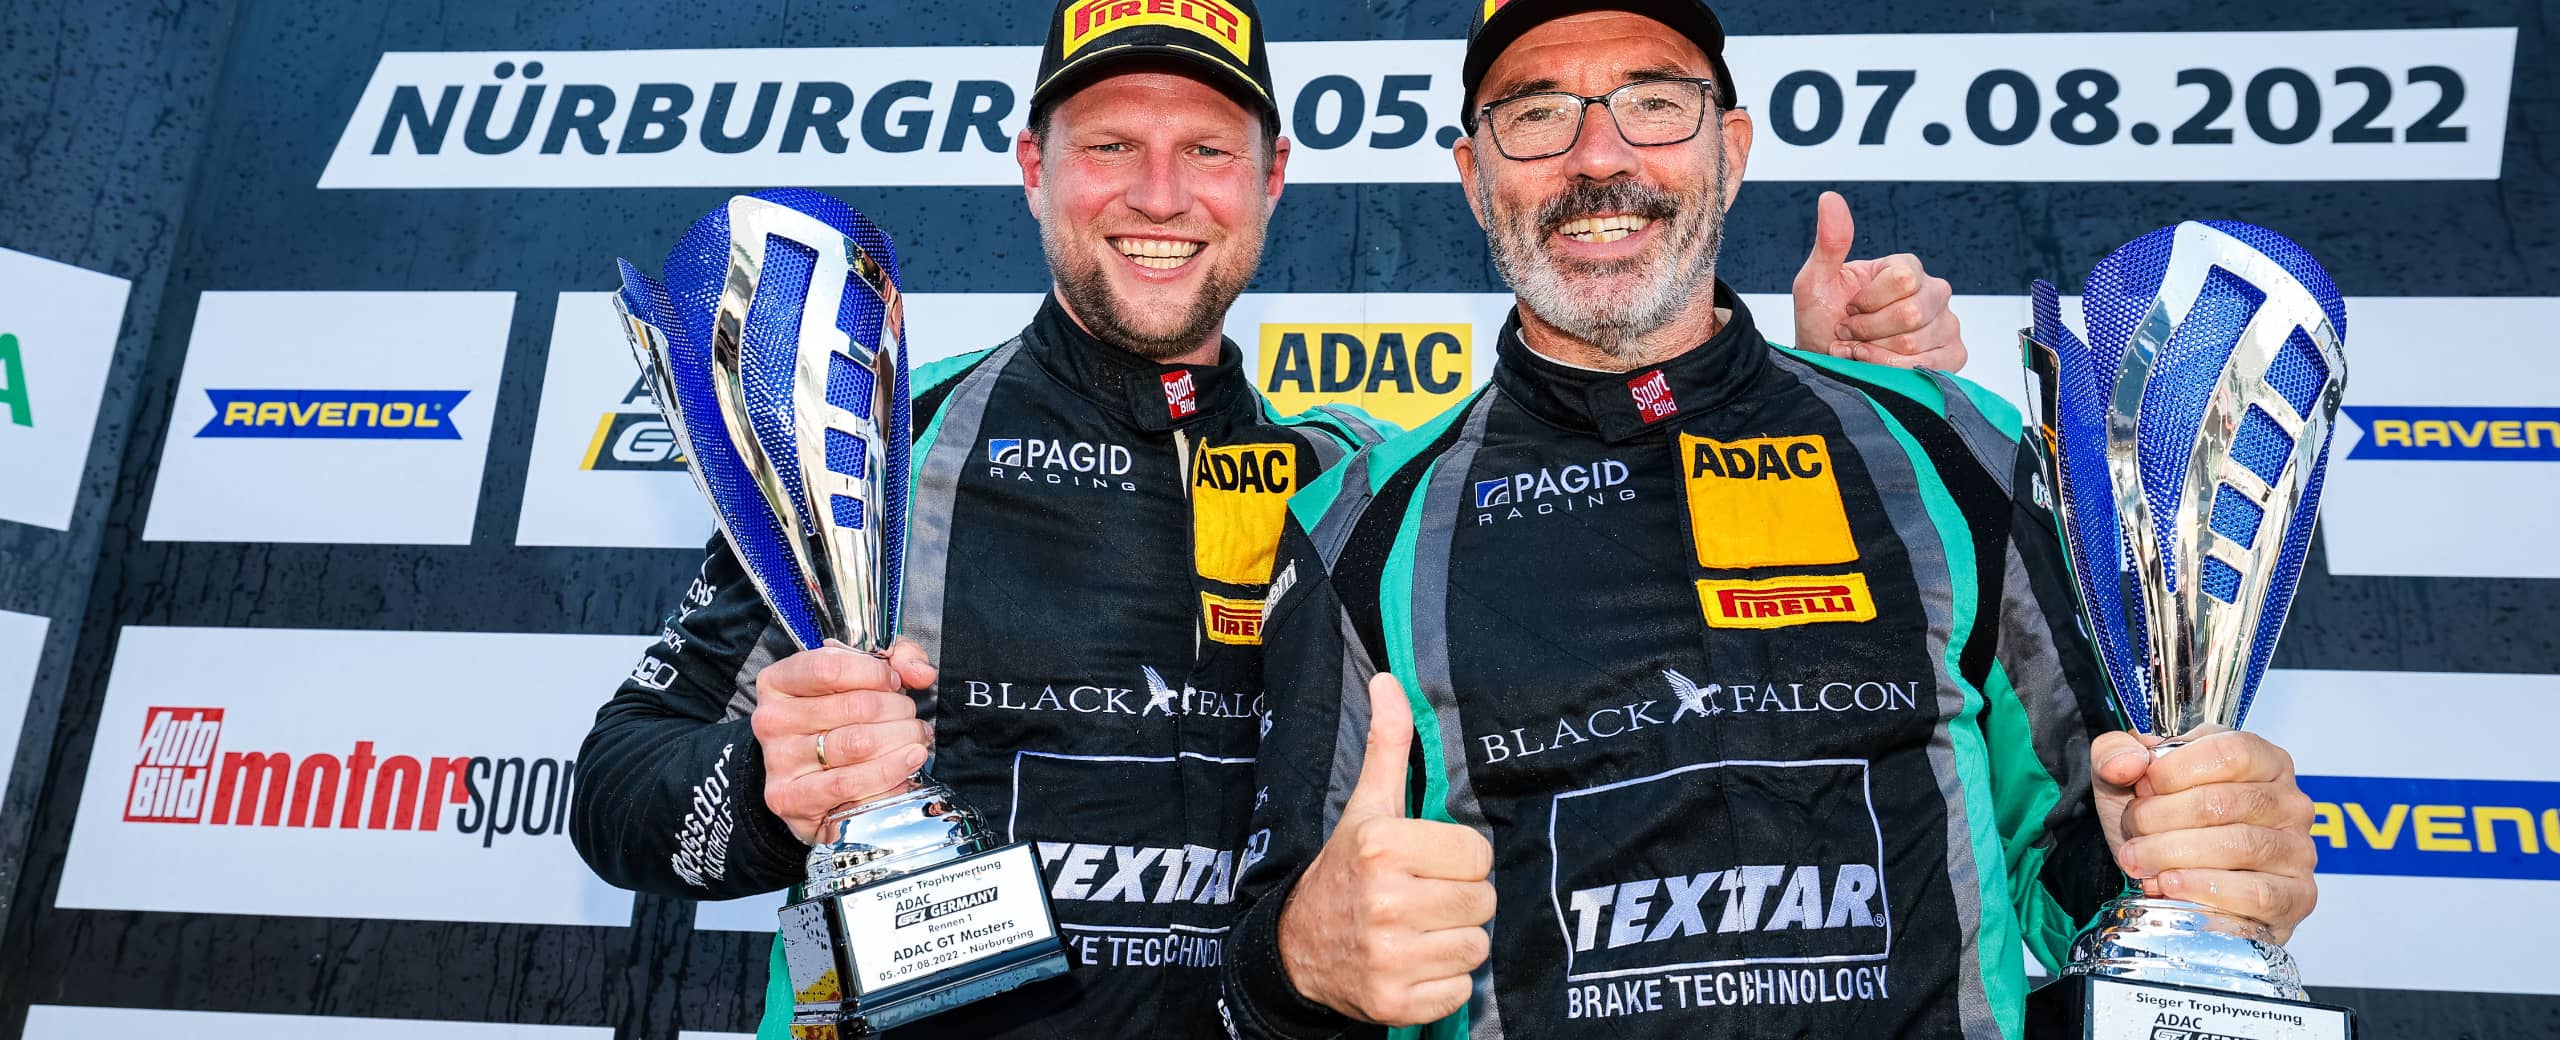 Daniel Schwerfeld und Axel Sartingen als Sieger mit Pokal auf dem Podium der ADAC GT4 Germany auf dem Nürburgring 2022, BLACK FALCON Team TEXTAR